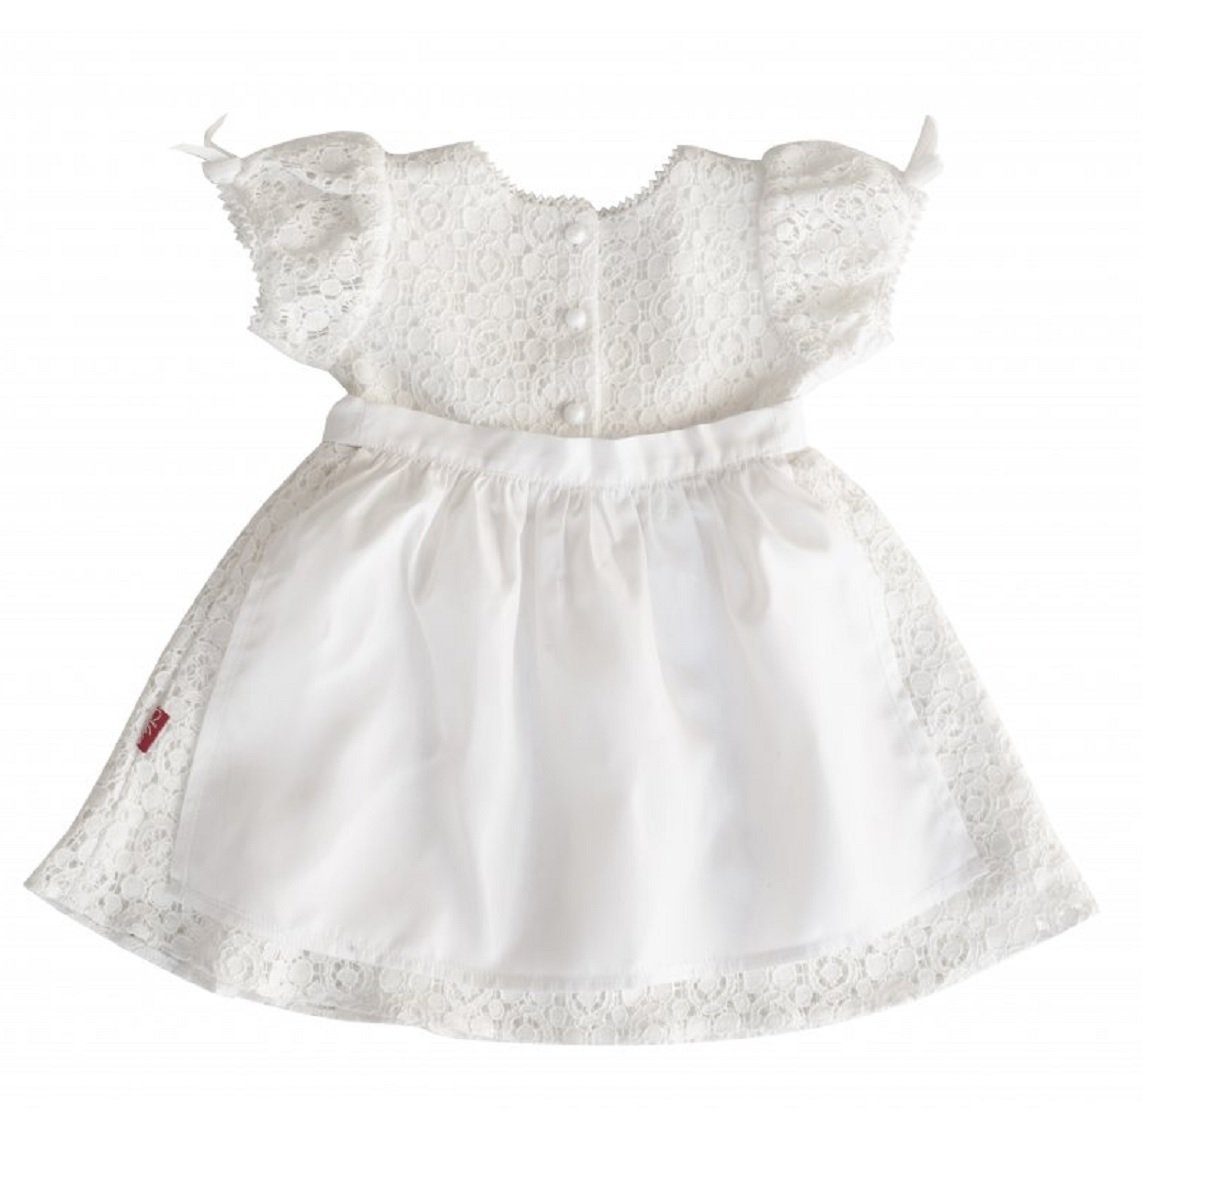 Claudia Mädchen Six for Kids Taufkleid für Neugeborene Kleid mit Mütze und Schuhen aus 100 % Baumwolle 3-teilig 